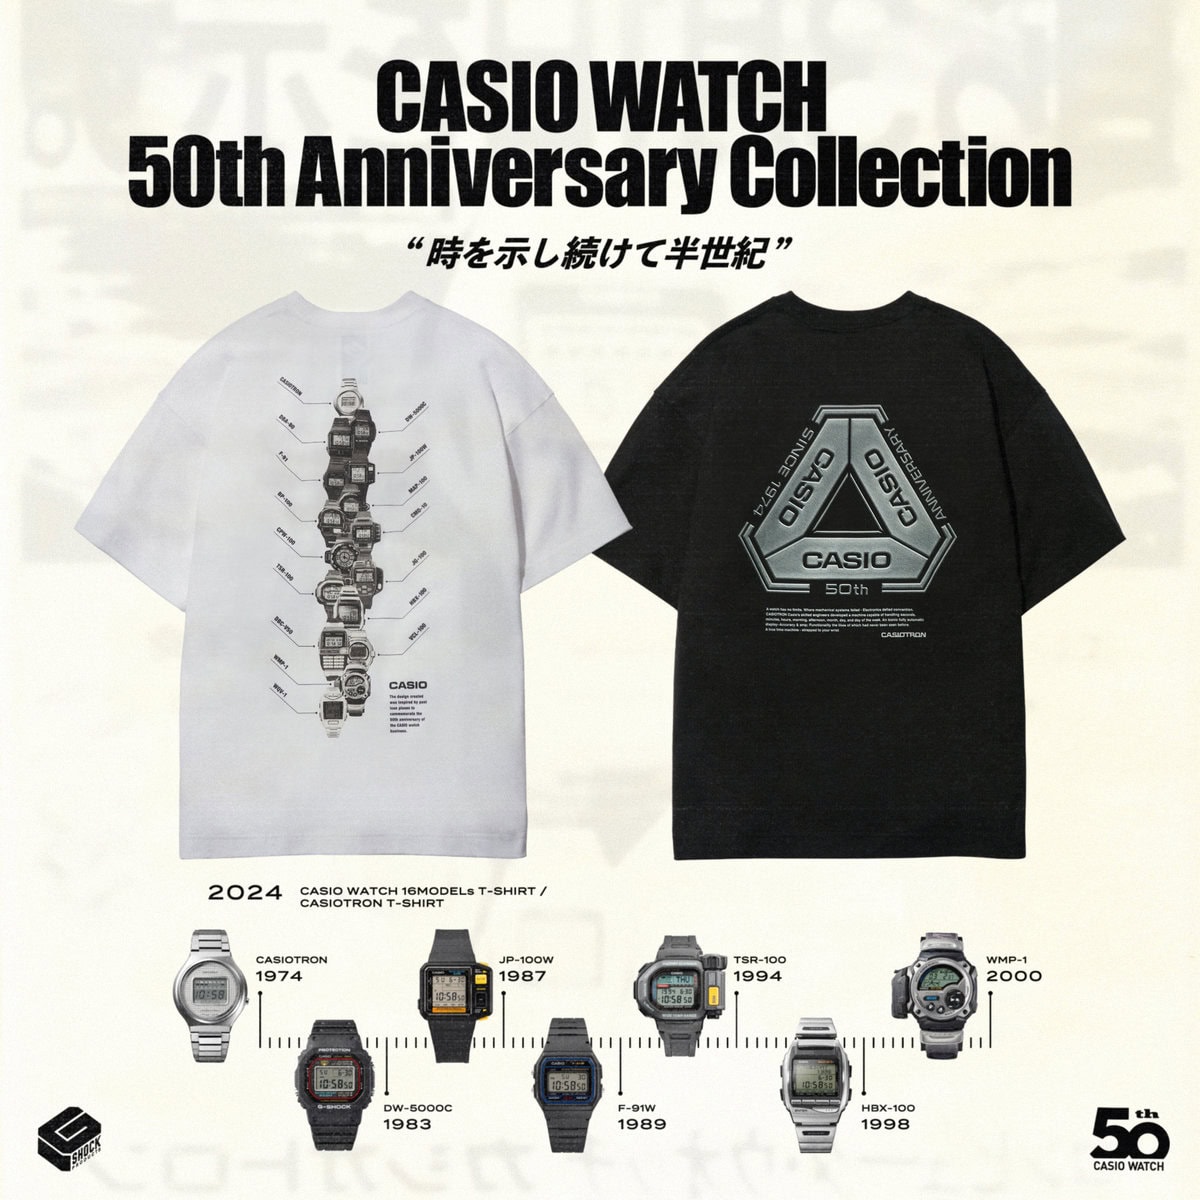 今回、カシオ時計事業50周年を記念して、オリジナルデザインのTシャツ2型を3アイテム制作。